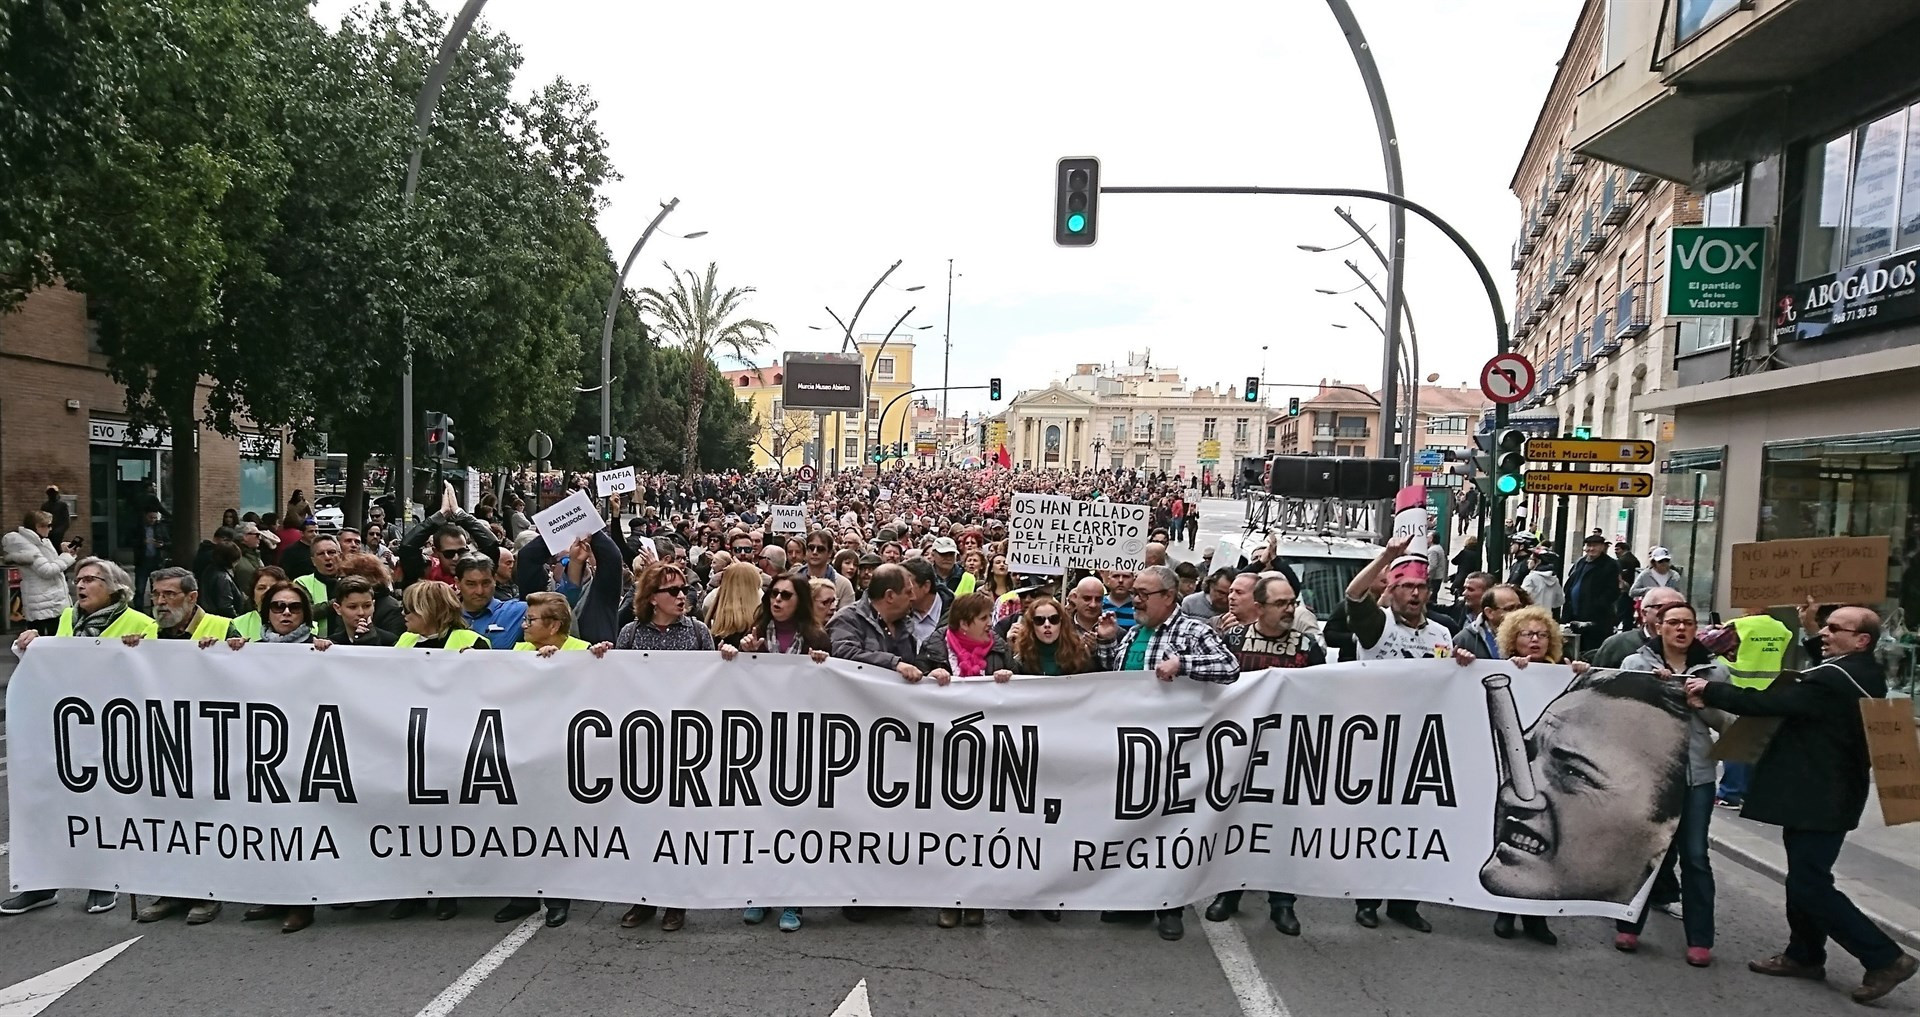 CorrupcionMurcia